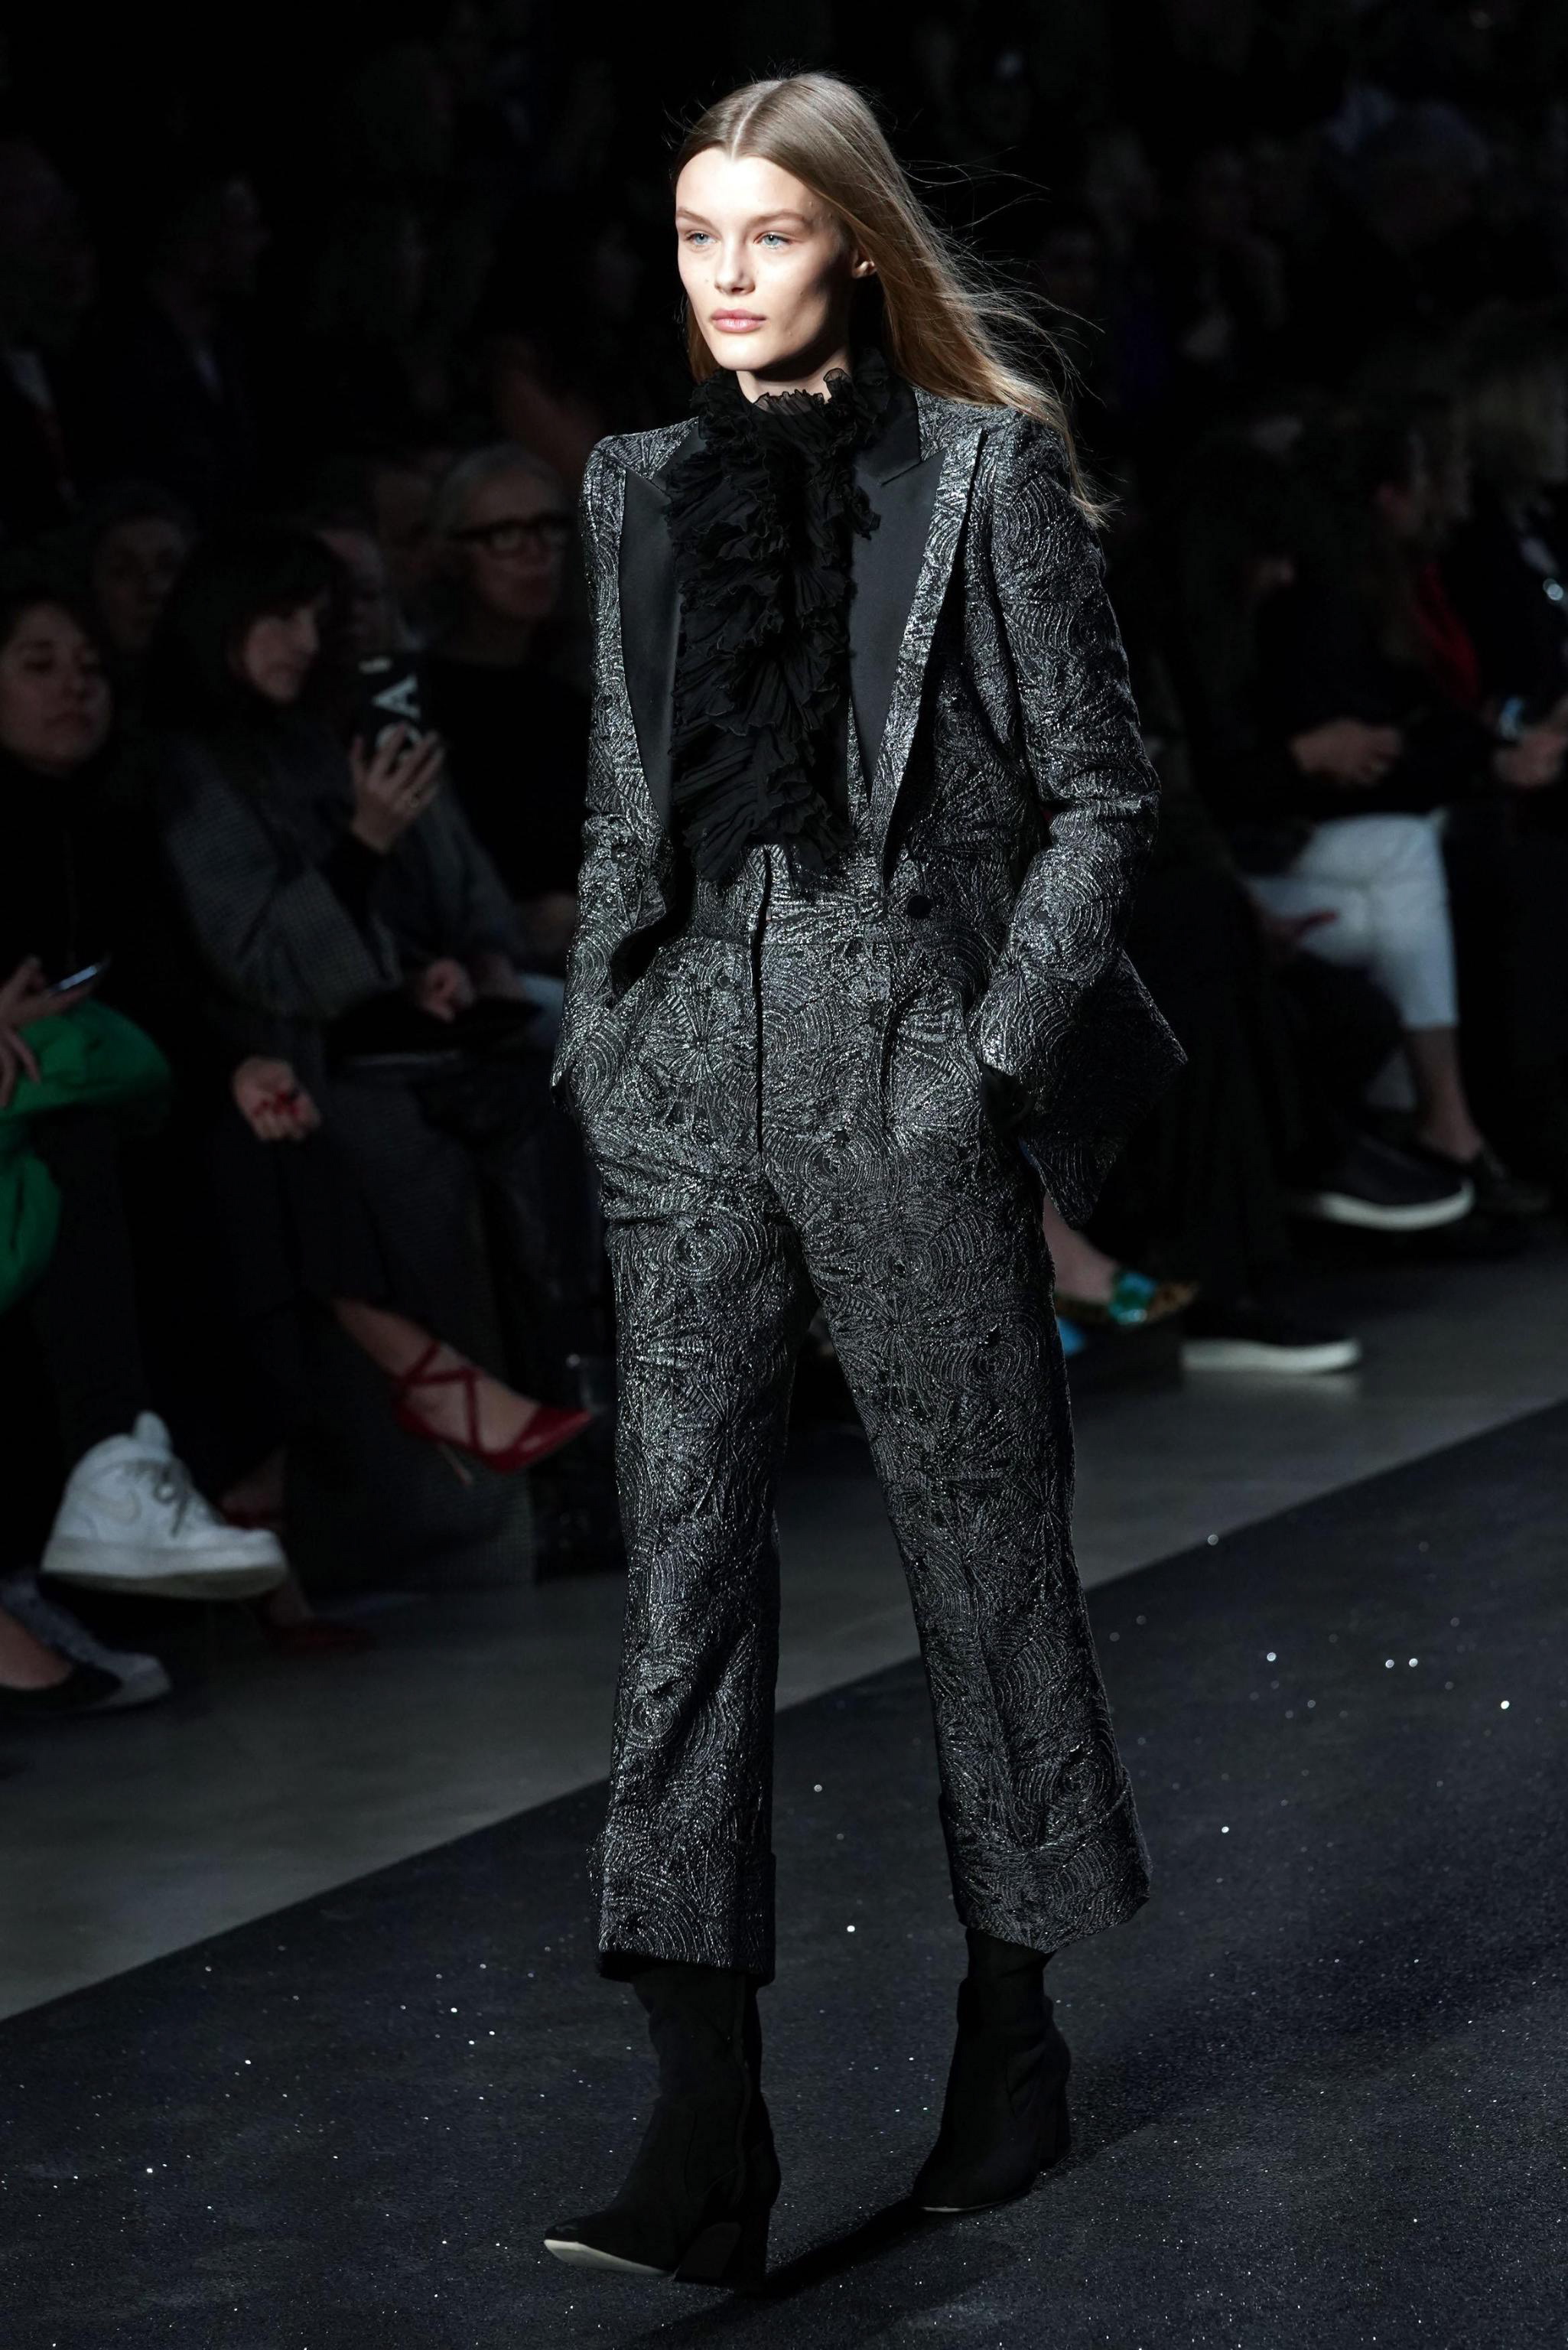 2月20日,在意大利米兰时装周上,模特展示alberta ferretti品牌2019/20